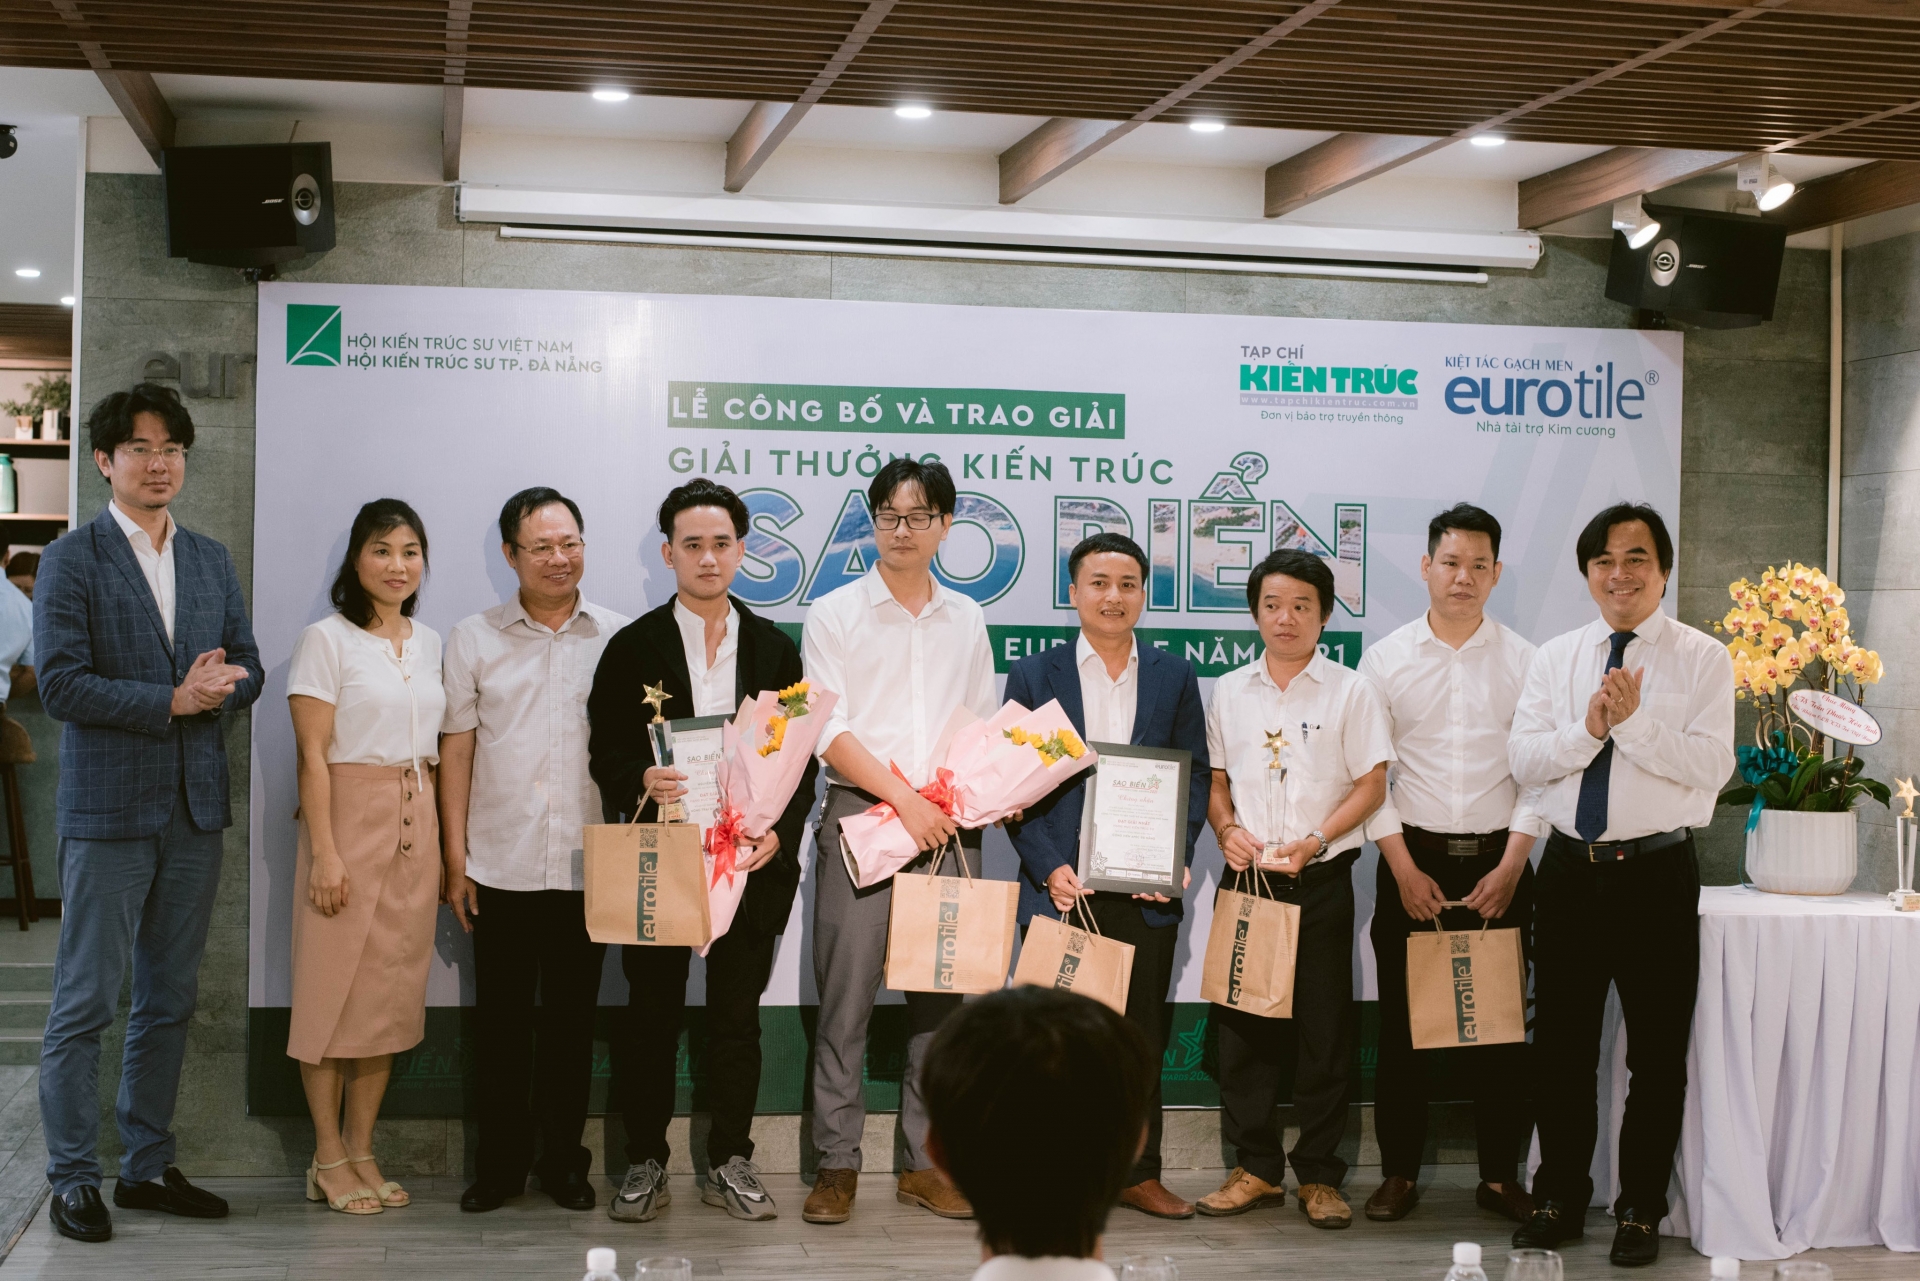 Hội Kiến Trúc sư Đà Nẵng Công bố và trao giải thưởng Kiến trúc Sao biển lần thứ II